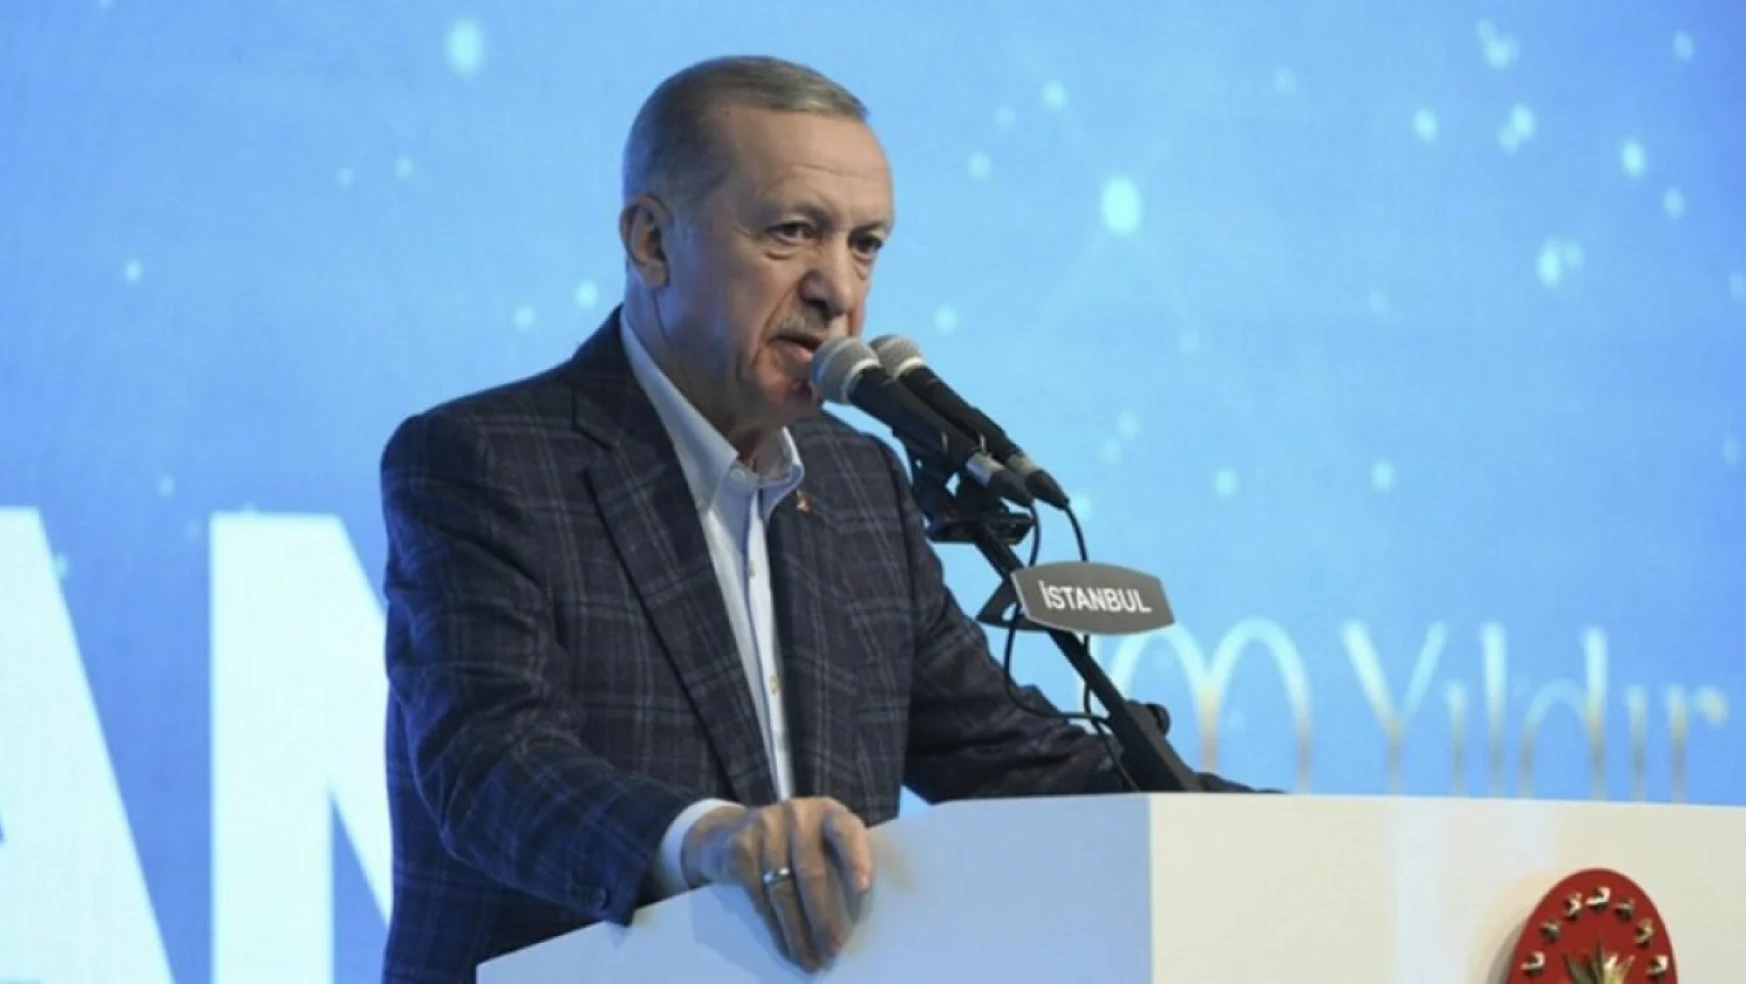 Cumhurbaşkanı Erdoğan açıkladı: Emekli ikramiyeleri 2-5 Nisan'da hesaplarda